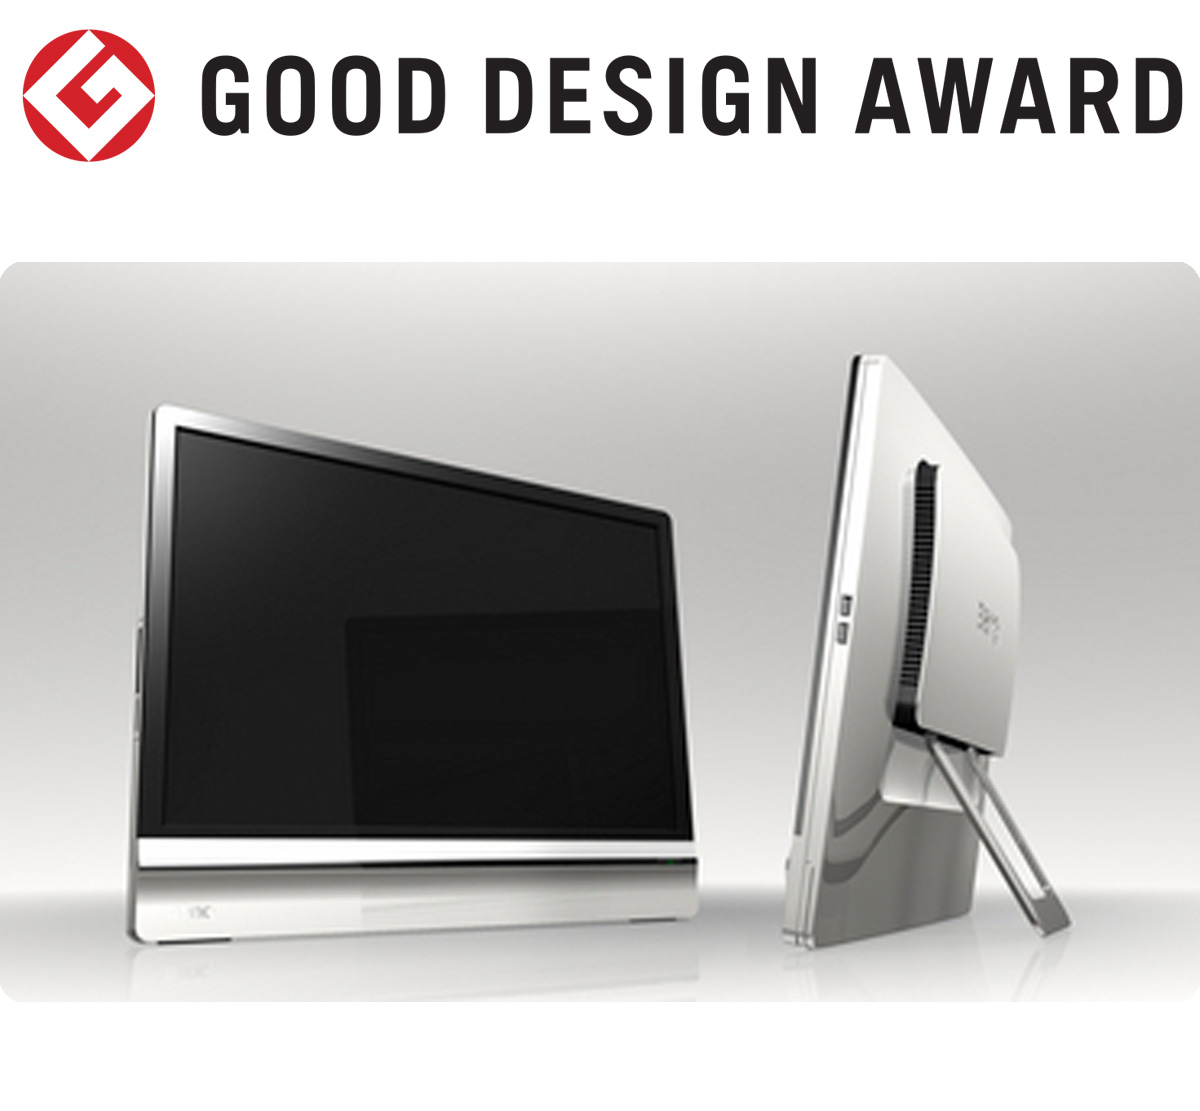 【日本】明基BenQ液晶显示器M2200W获颁2008年度G-Mark设计大奖（GOOD DESIGN AWARD 2008）